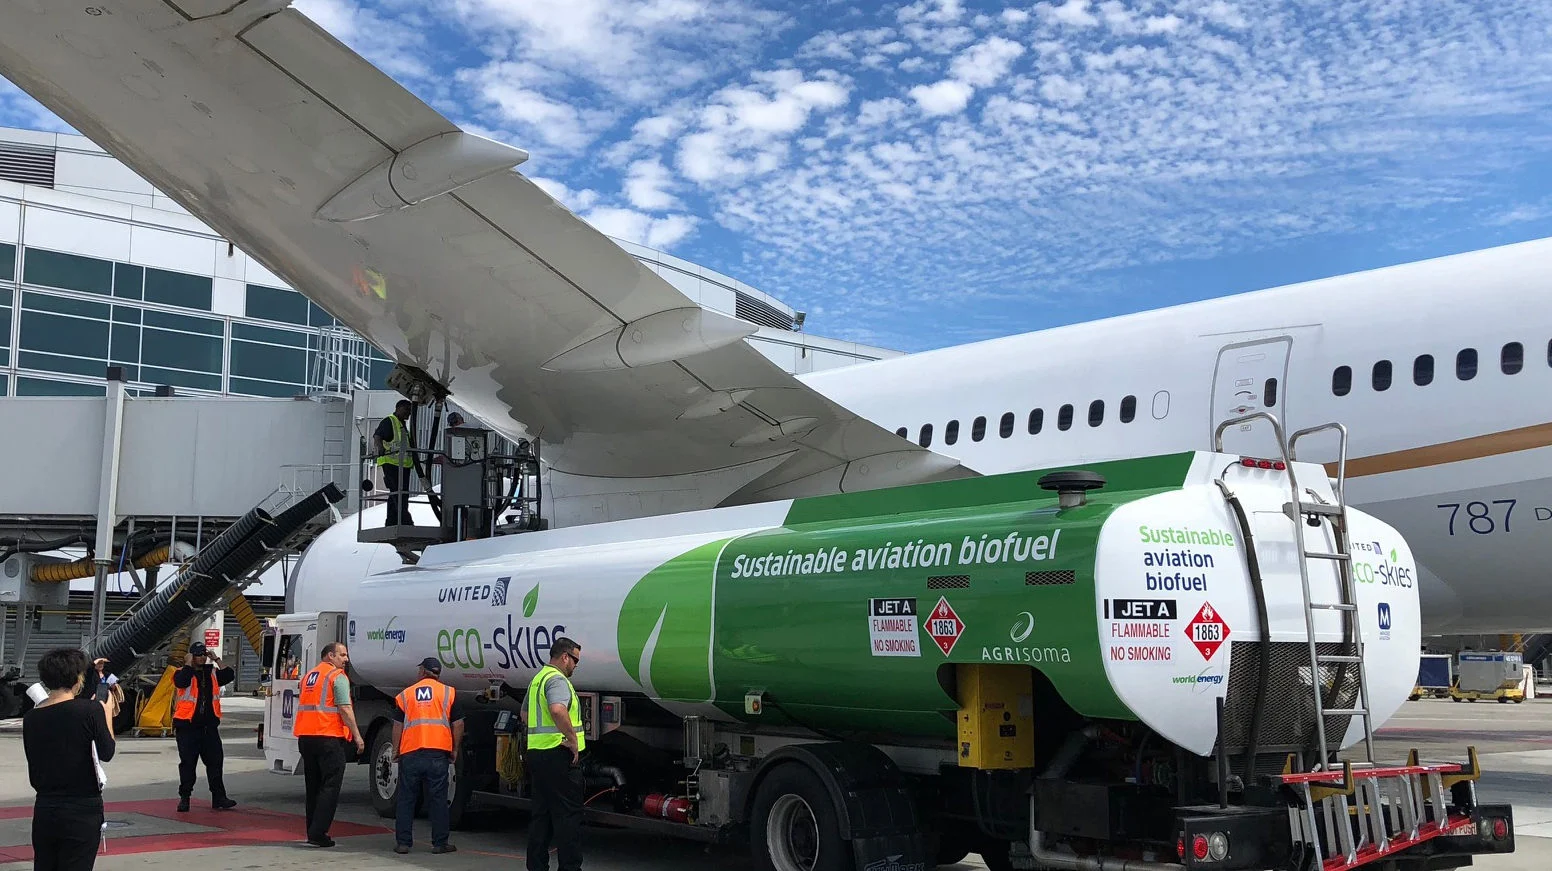 Combustível do Futuro: SAF vai precisar de hidrogênio verde, não fóssil. Na imagem, biocombustível de aviação abastece aeronave da United no Aeroporto Internacional de São Francisco, nos EUA (Foto: Divulgação)